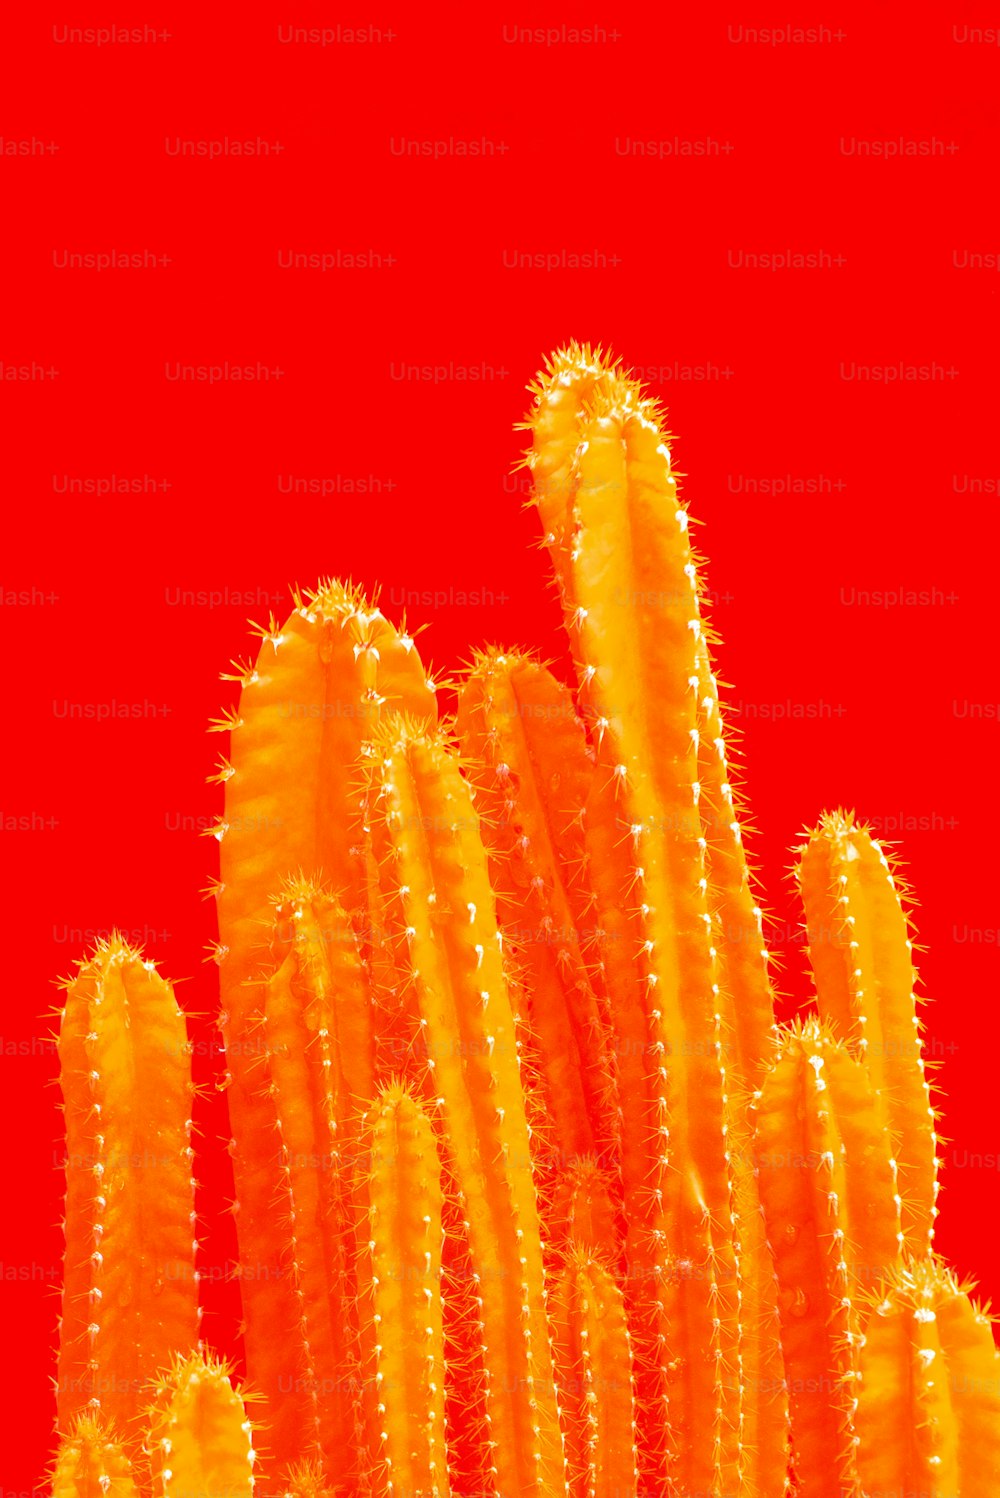 Un primer plano de una planta de cactus con un fondo rojo